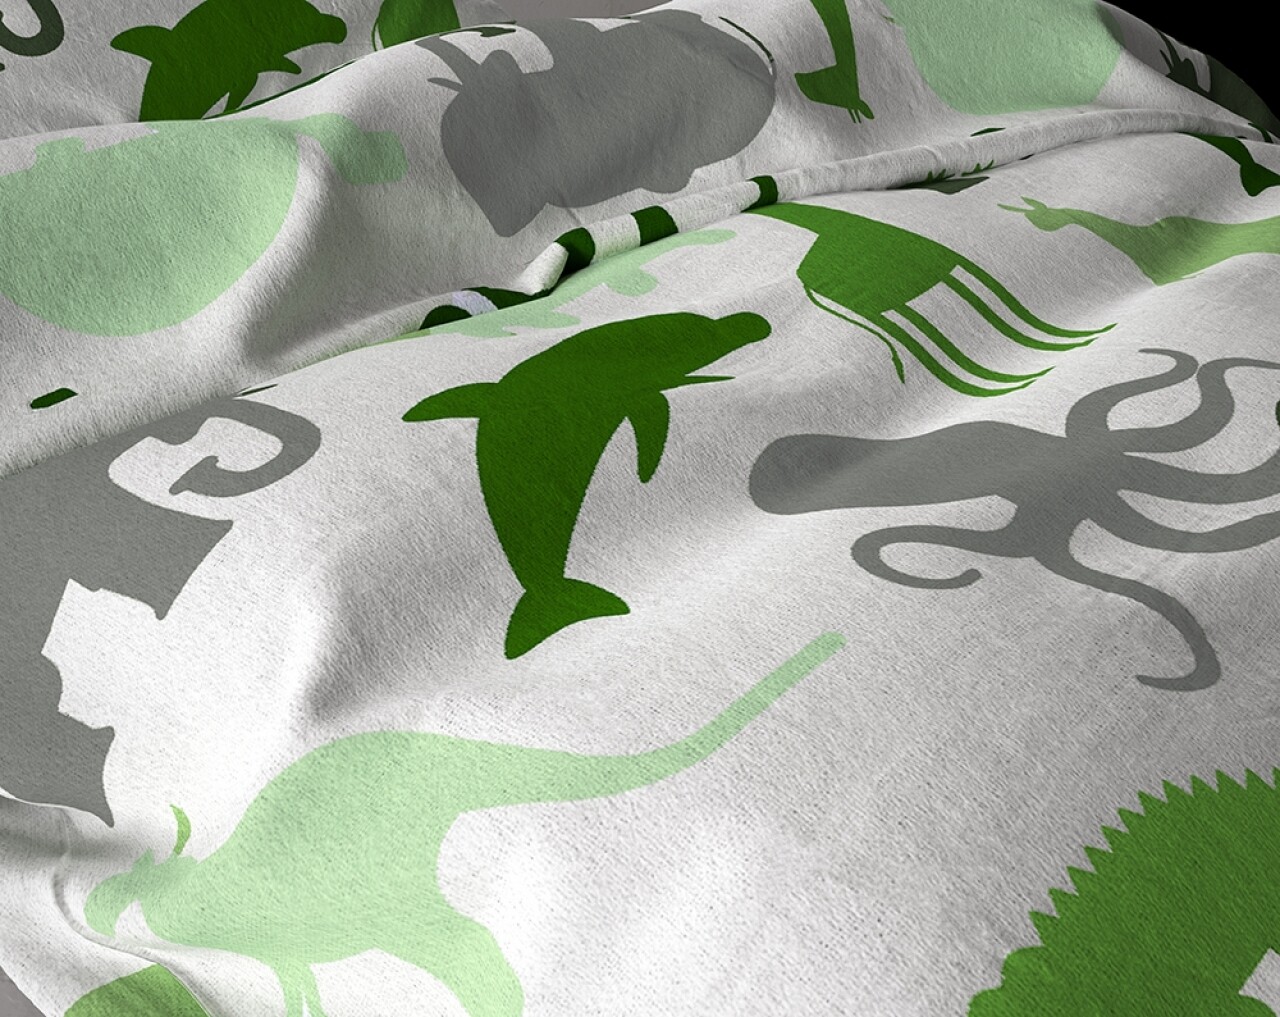 Lenjerie De Pat Pentru O Persoana, Small Dino Green, Royal Textile, 2 Piese, 140 X 200 Cm, 100% Bumbac Flanel, Alb/verde